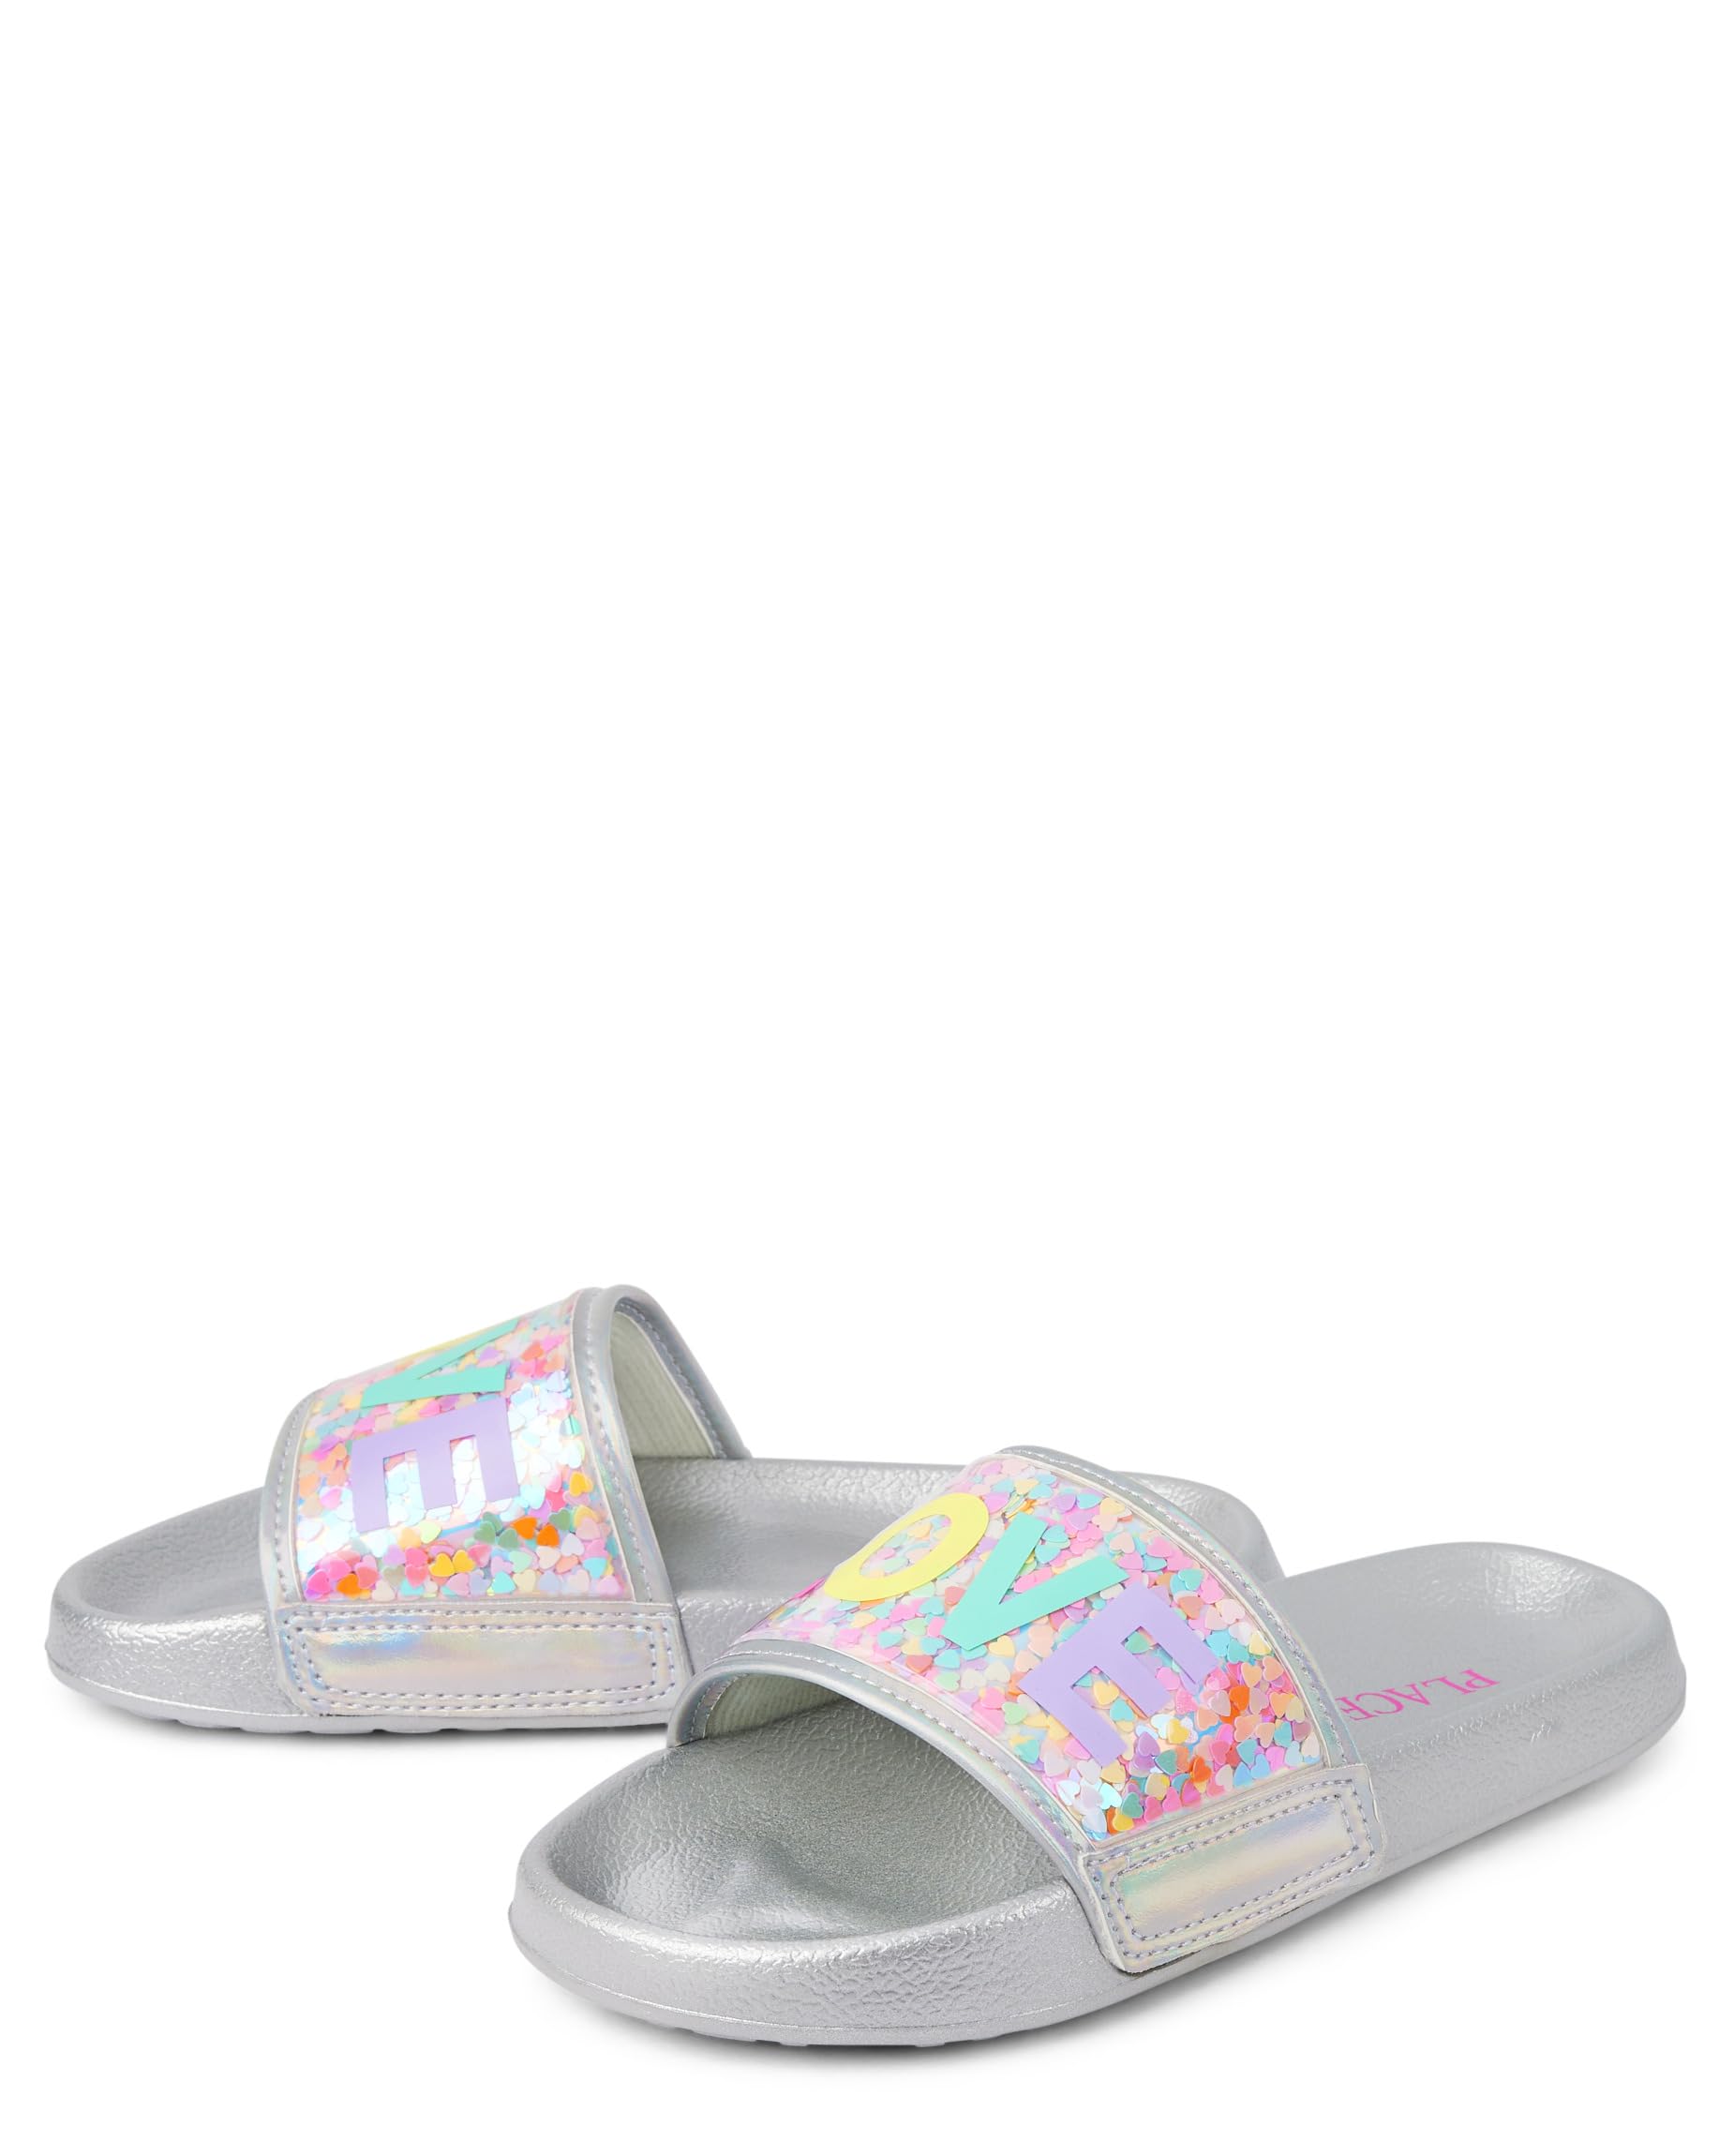 The Children's Place Girl's Everyday Slip on Slide Sandals